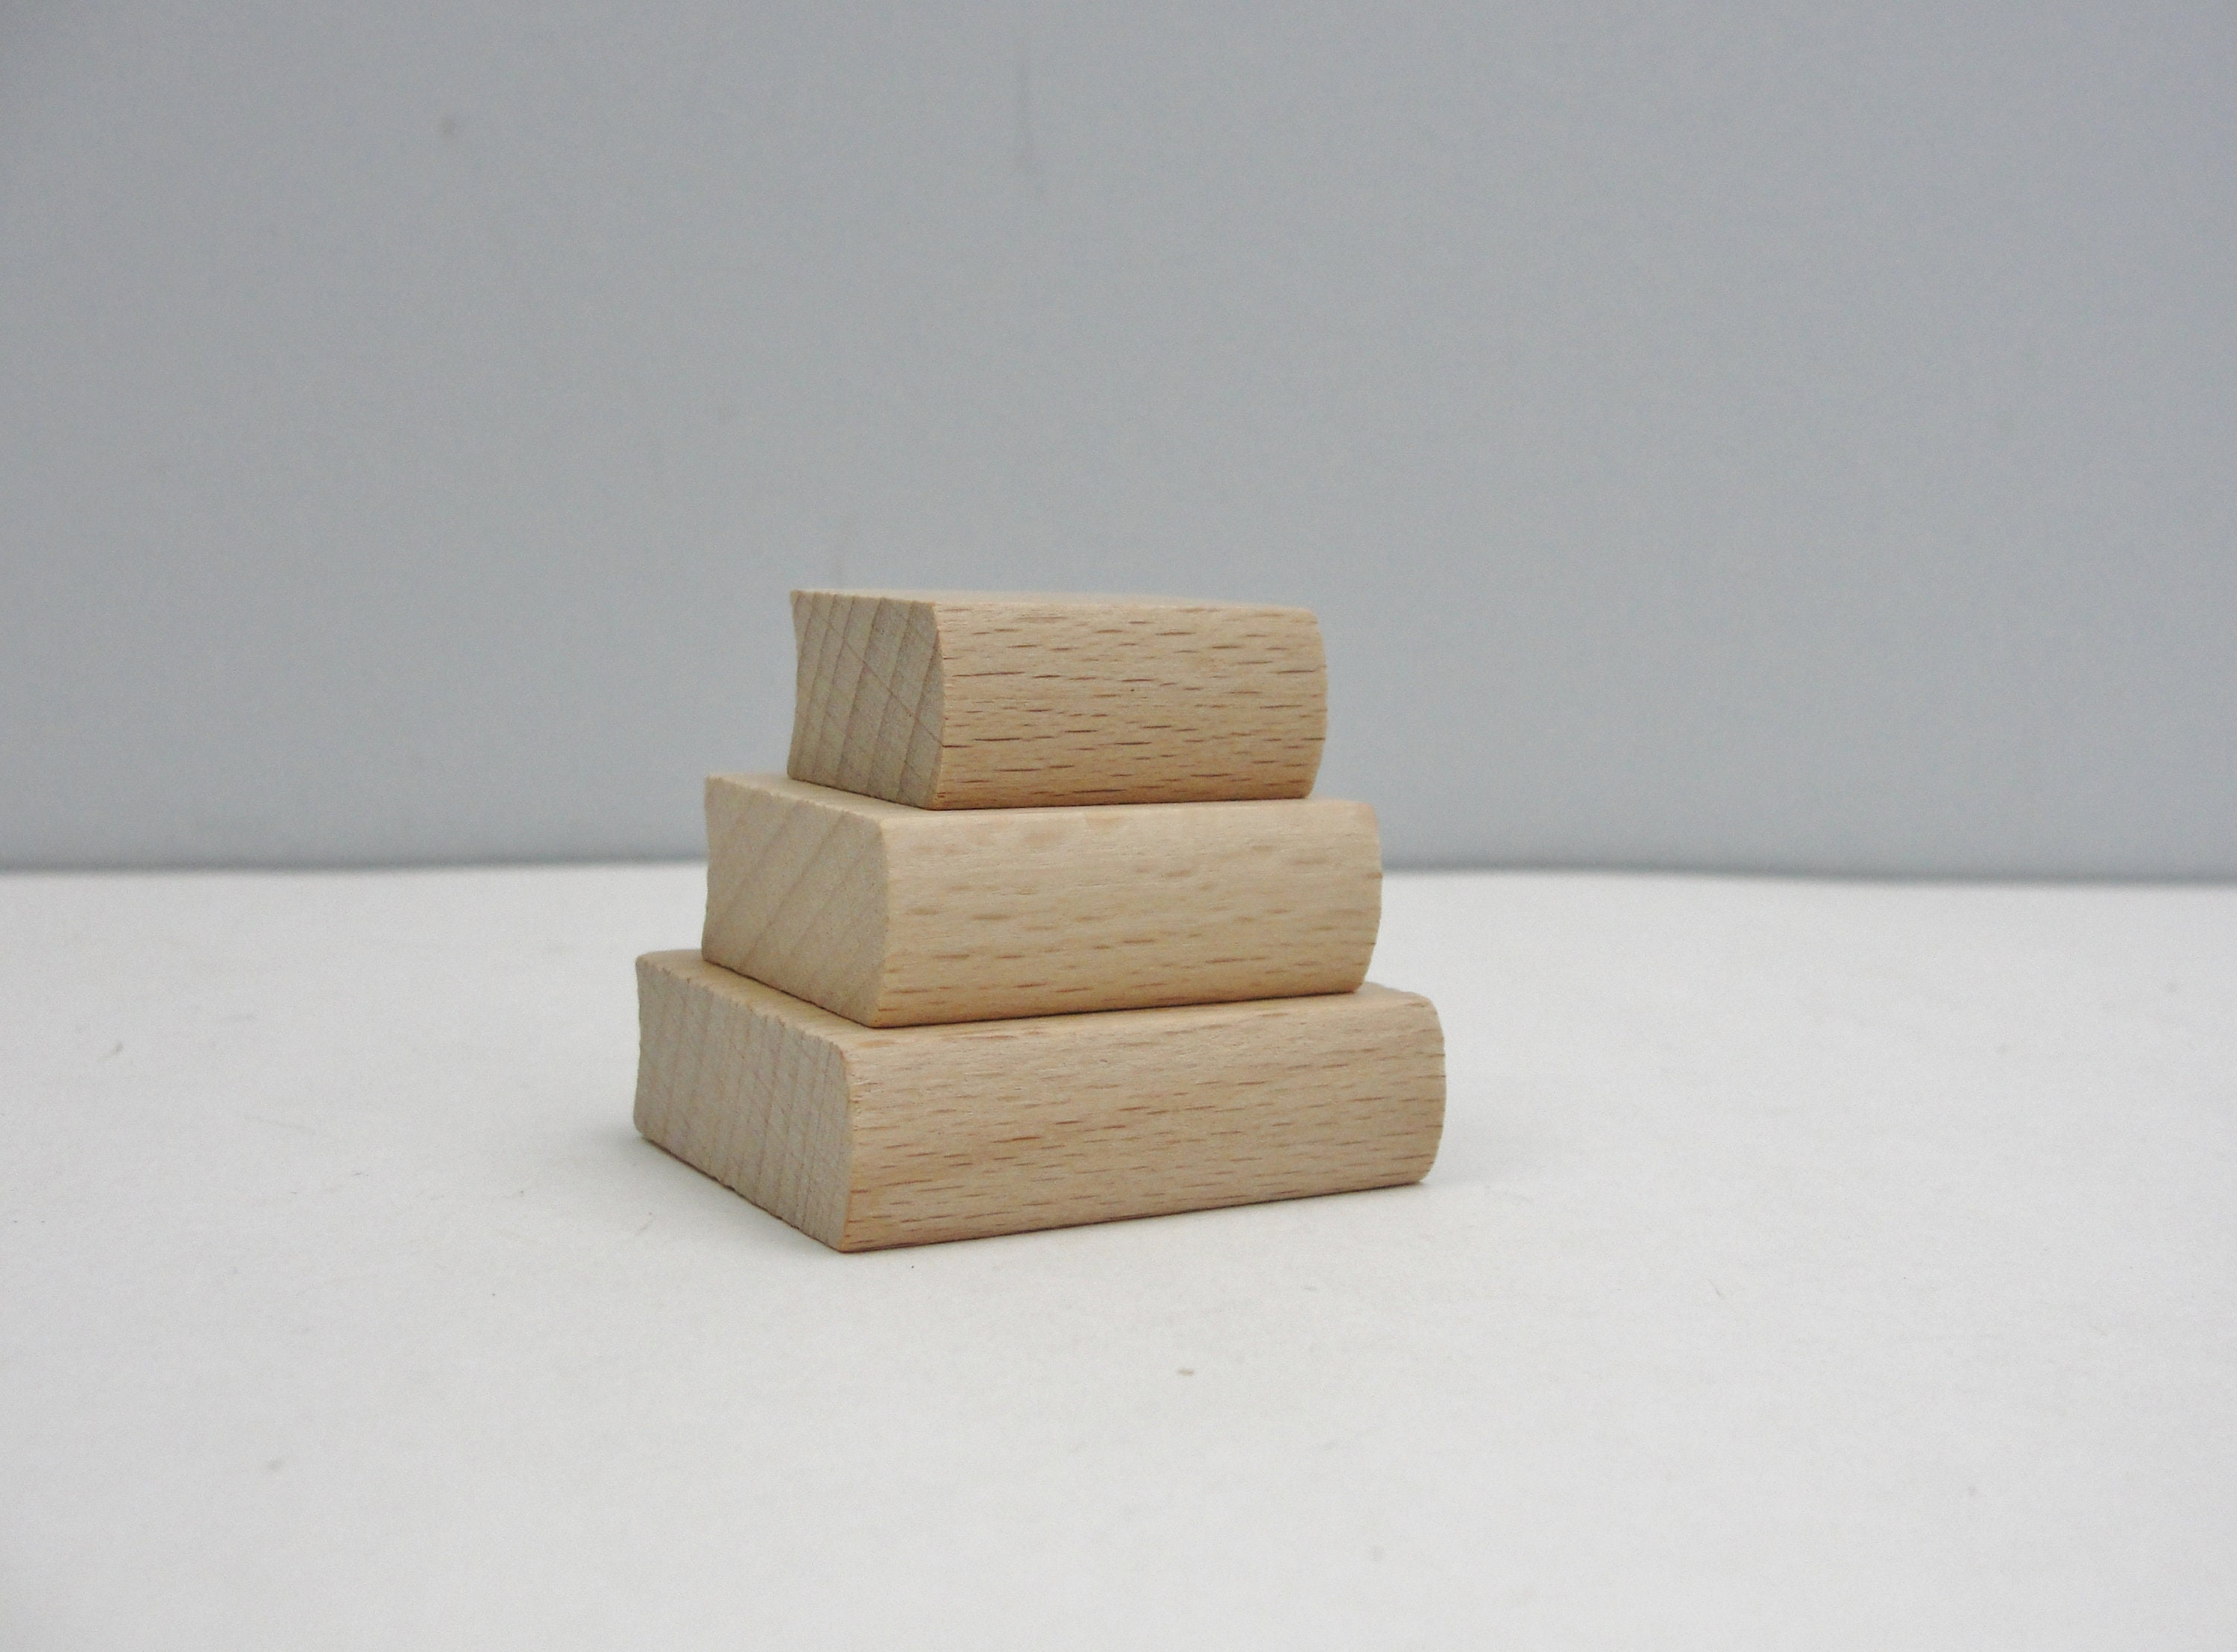 Factory Direct Craft Paper Mache Book Box Set, 6 3/4'' Long x 5 1/4'' Wide,  Brown, Craft Supplies - Google Express